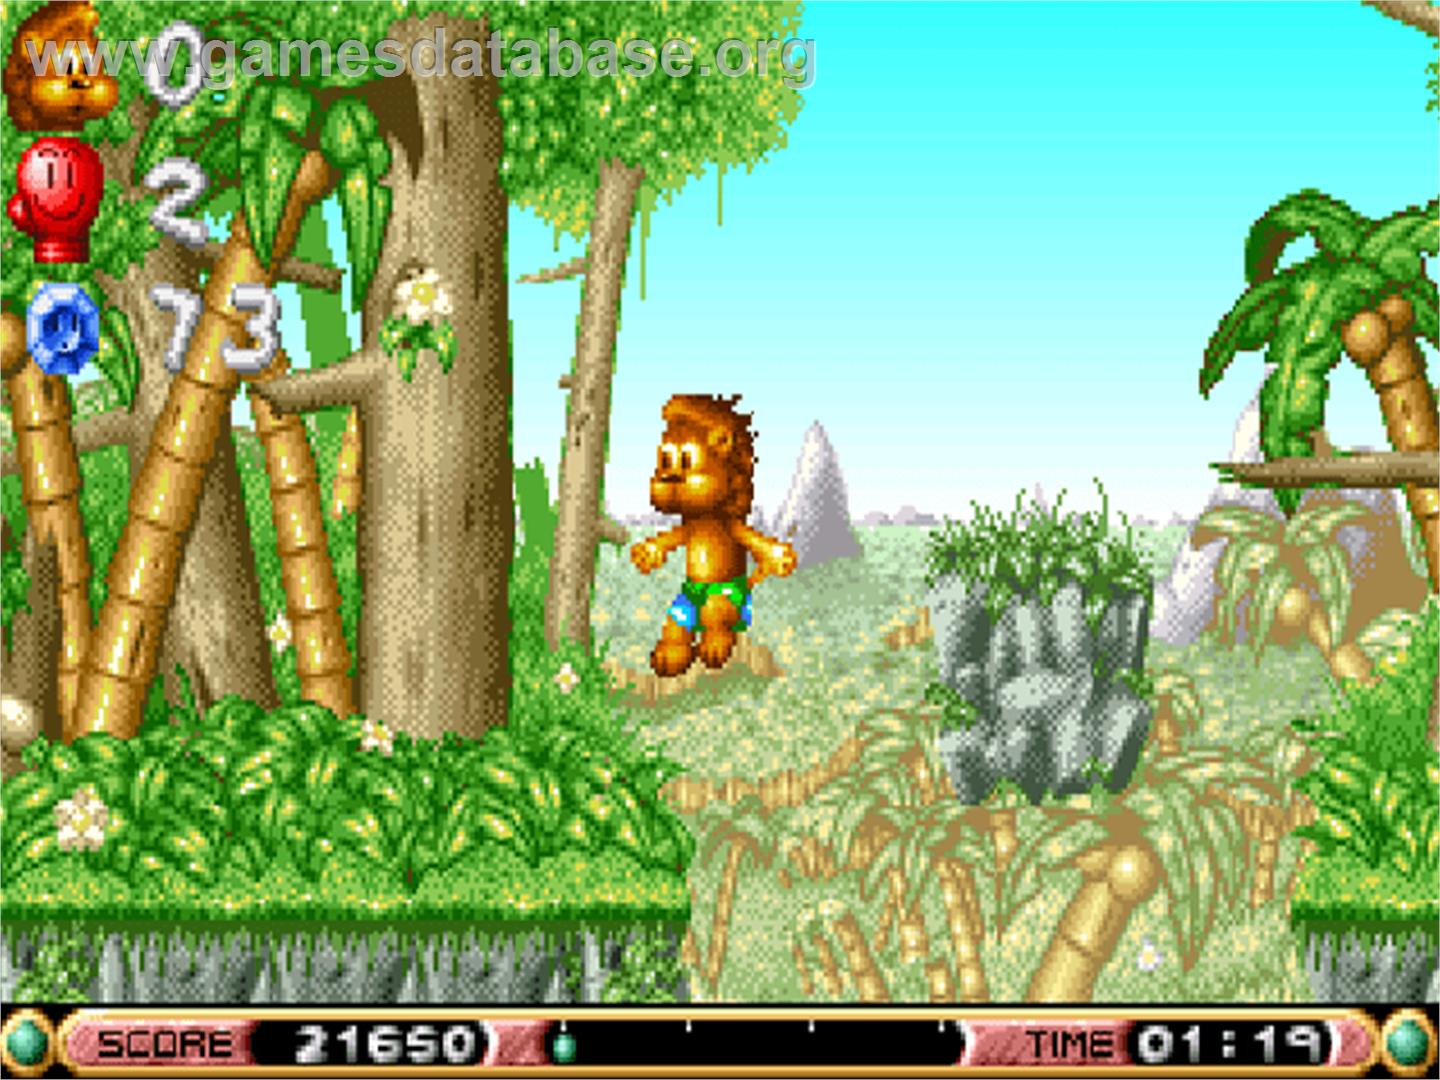 Brian the Lion - Commodore Amiga CD32 - Artwork - In Game